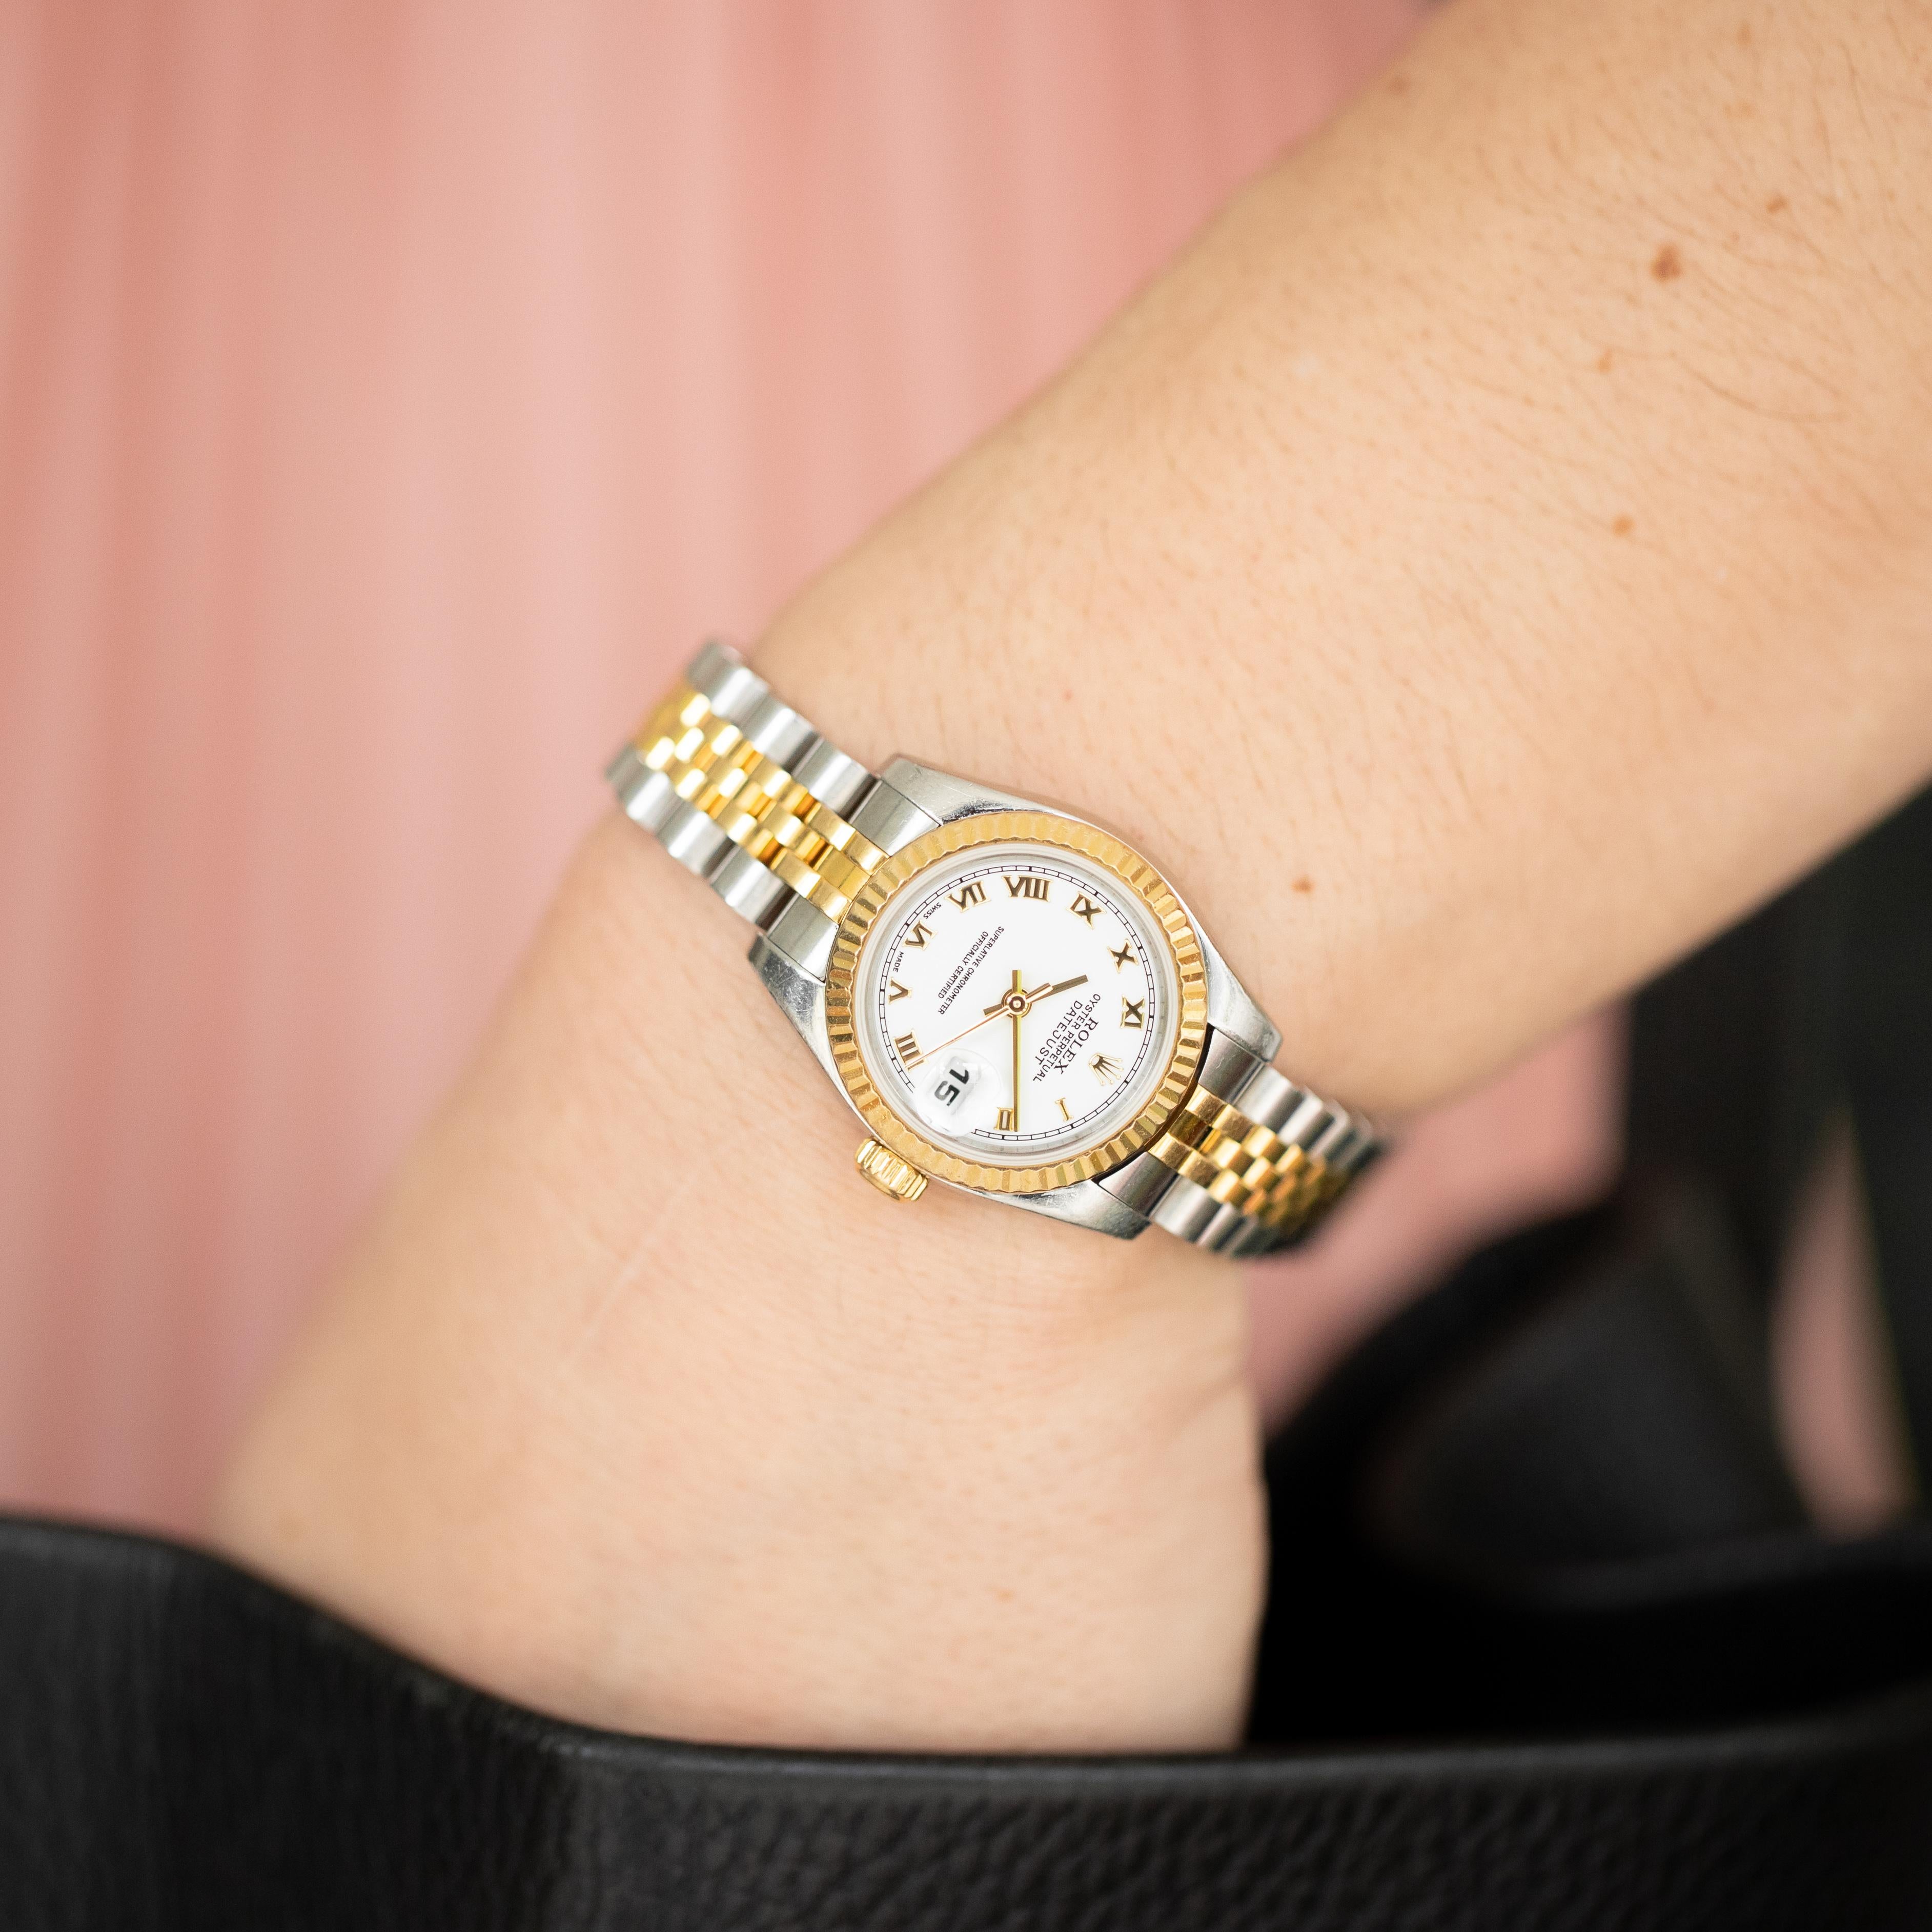 Nous vous proposons à la vente une montre Rolex Oyster Perpetual Datejust pour dame, numéro de référence 179173, datant de l'année 2006. Elle est dotée d'un boîtier de 26 mm en acier inoxydable bicolore et d'une lunette cannelée en or jaune massif